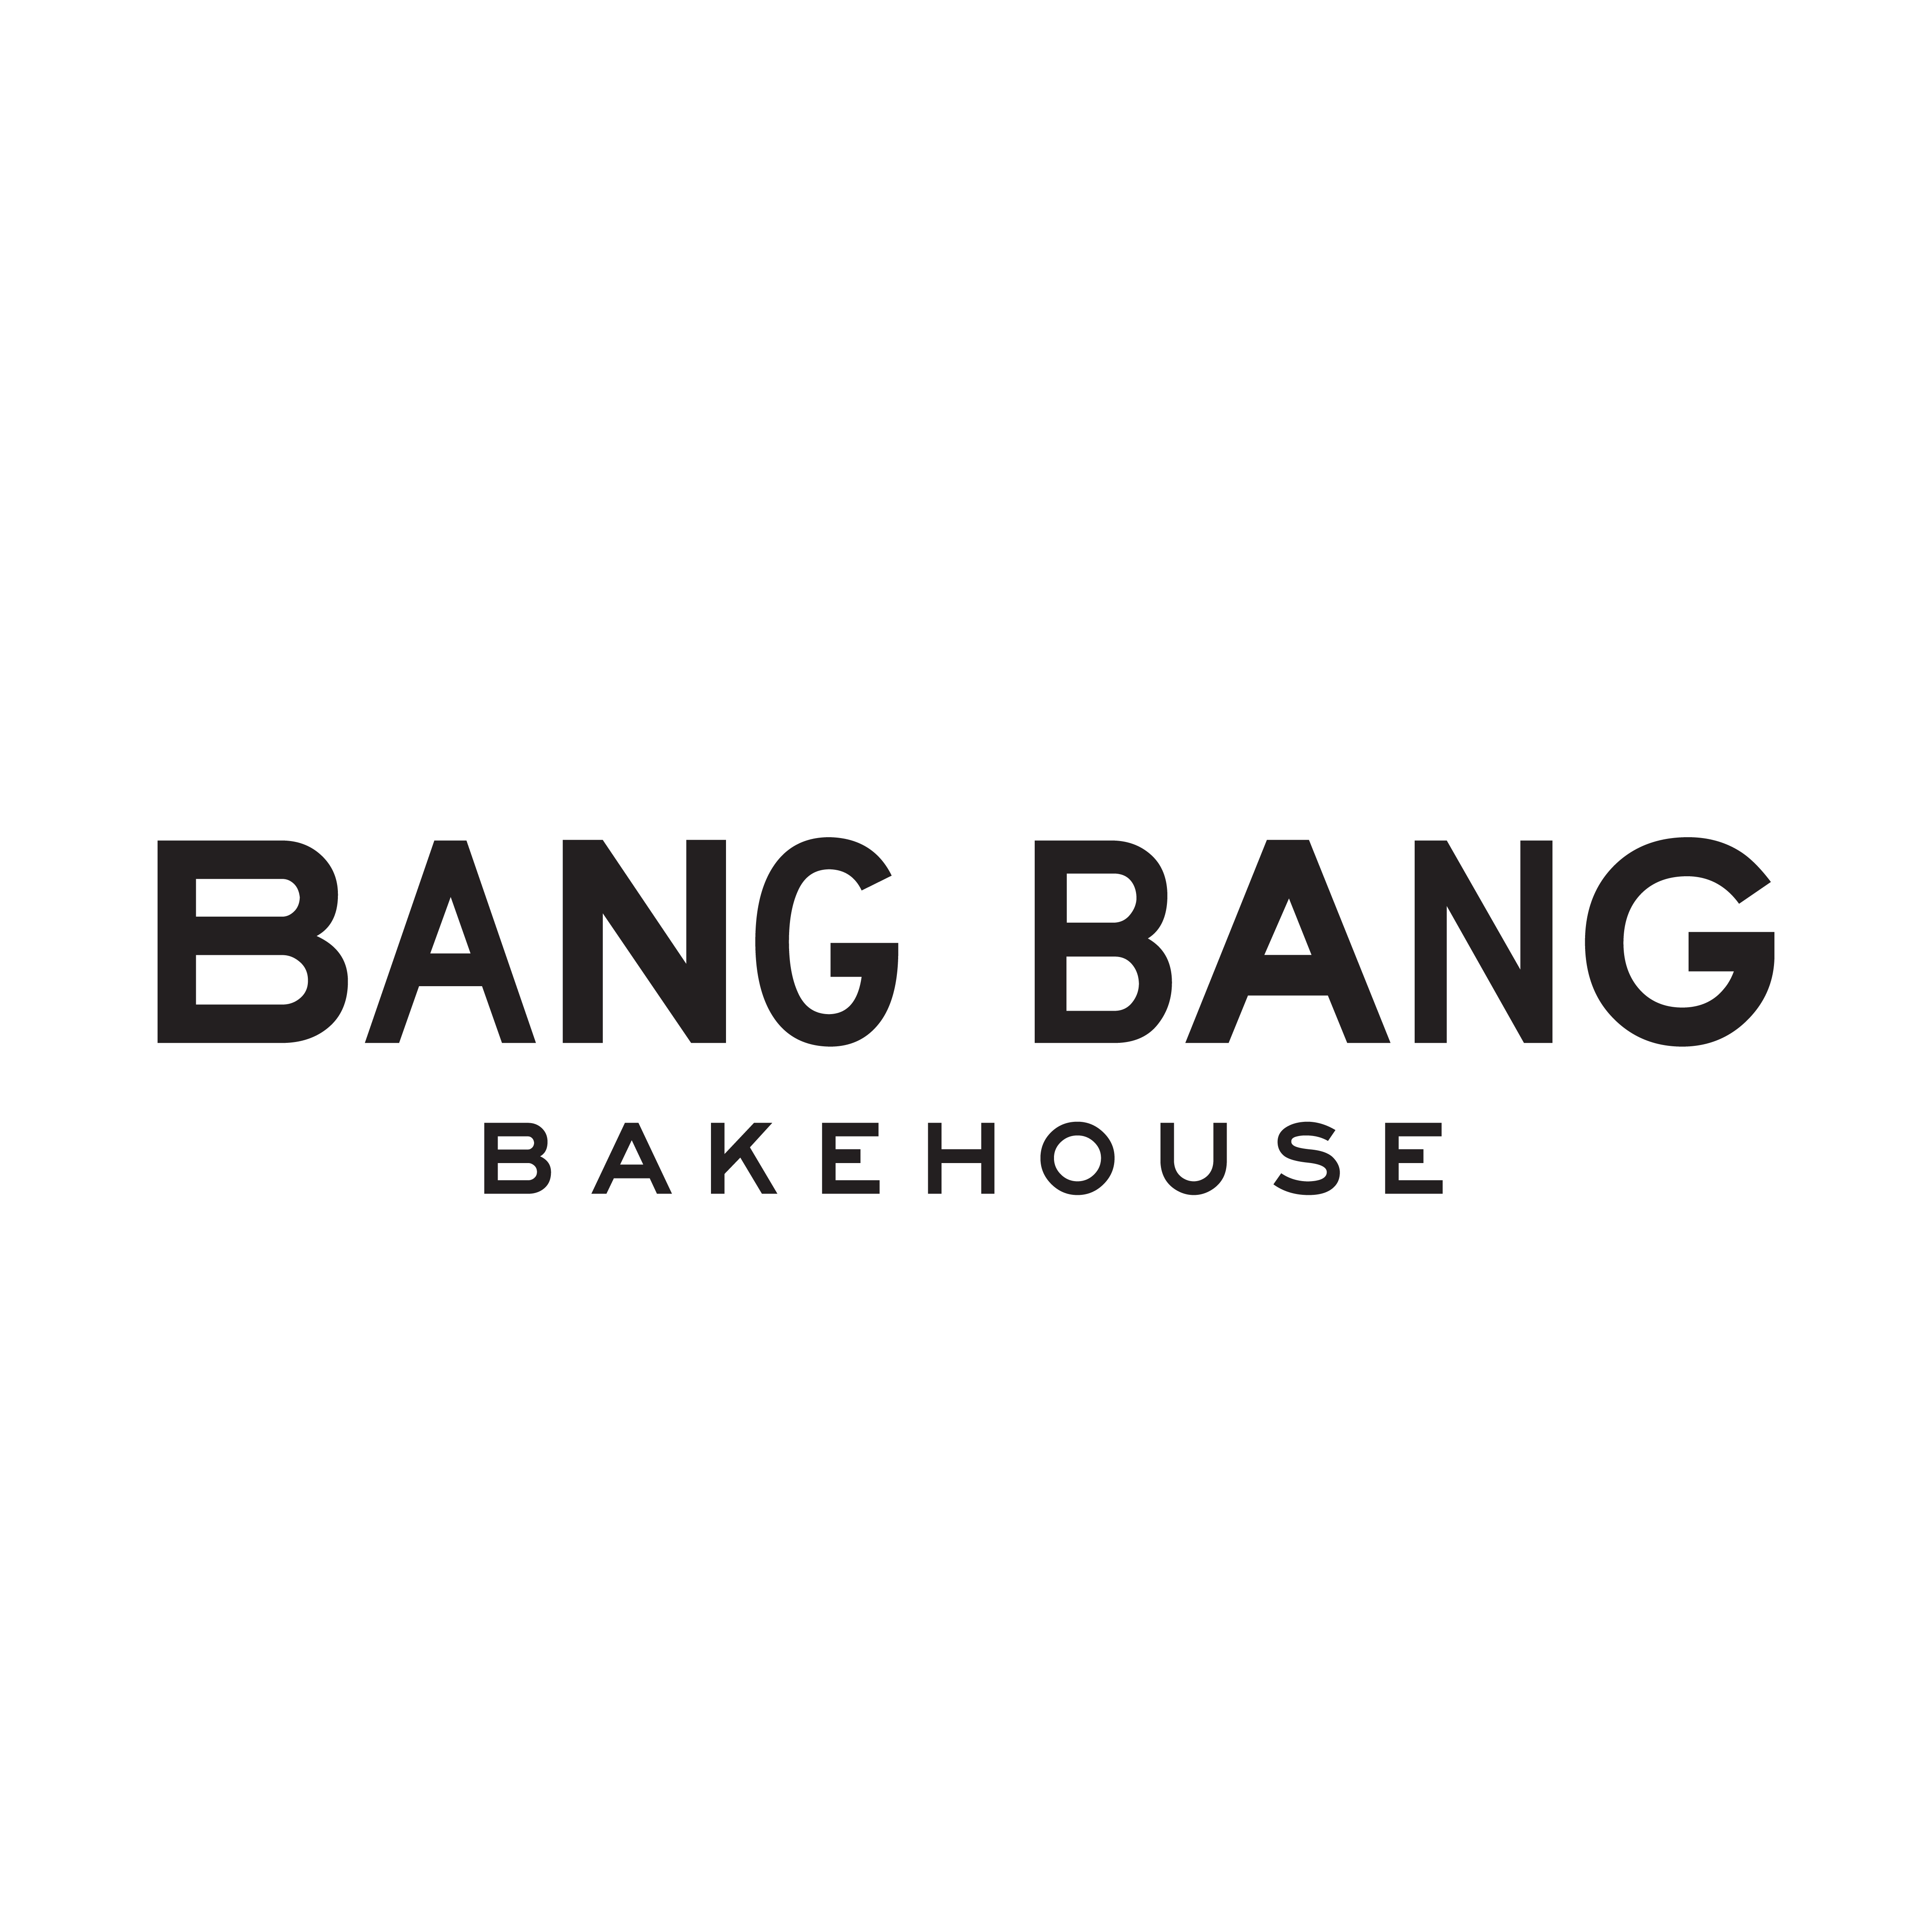 Bang Bang Bakehouse